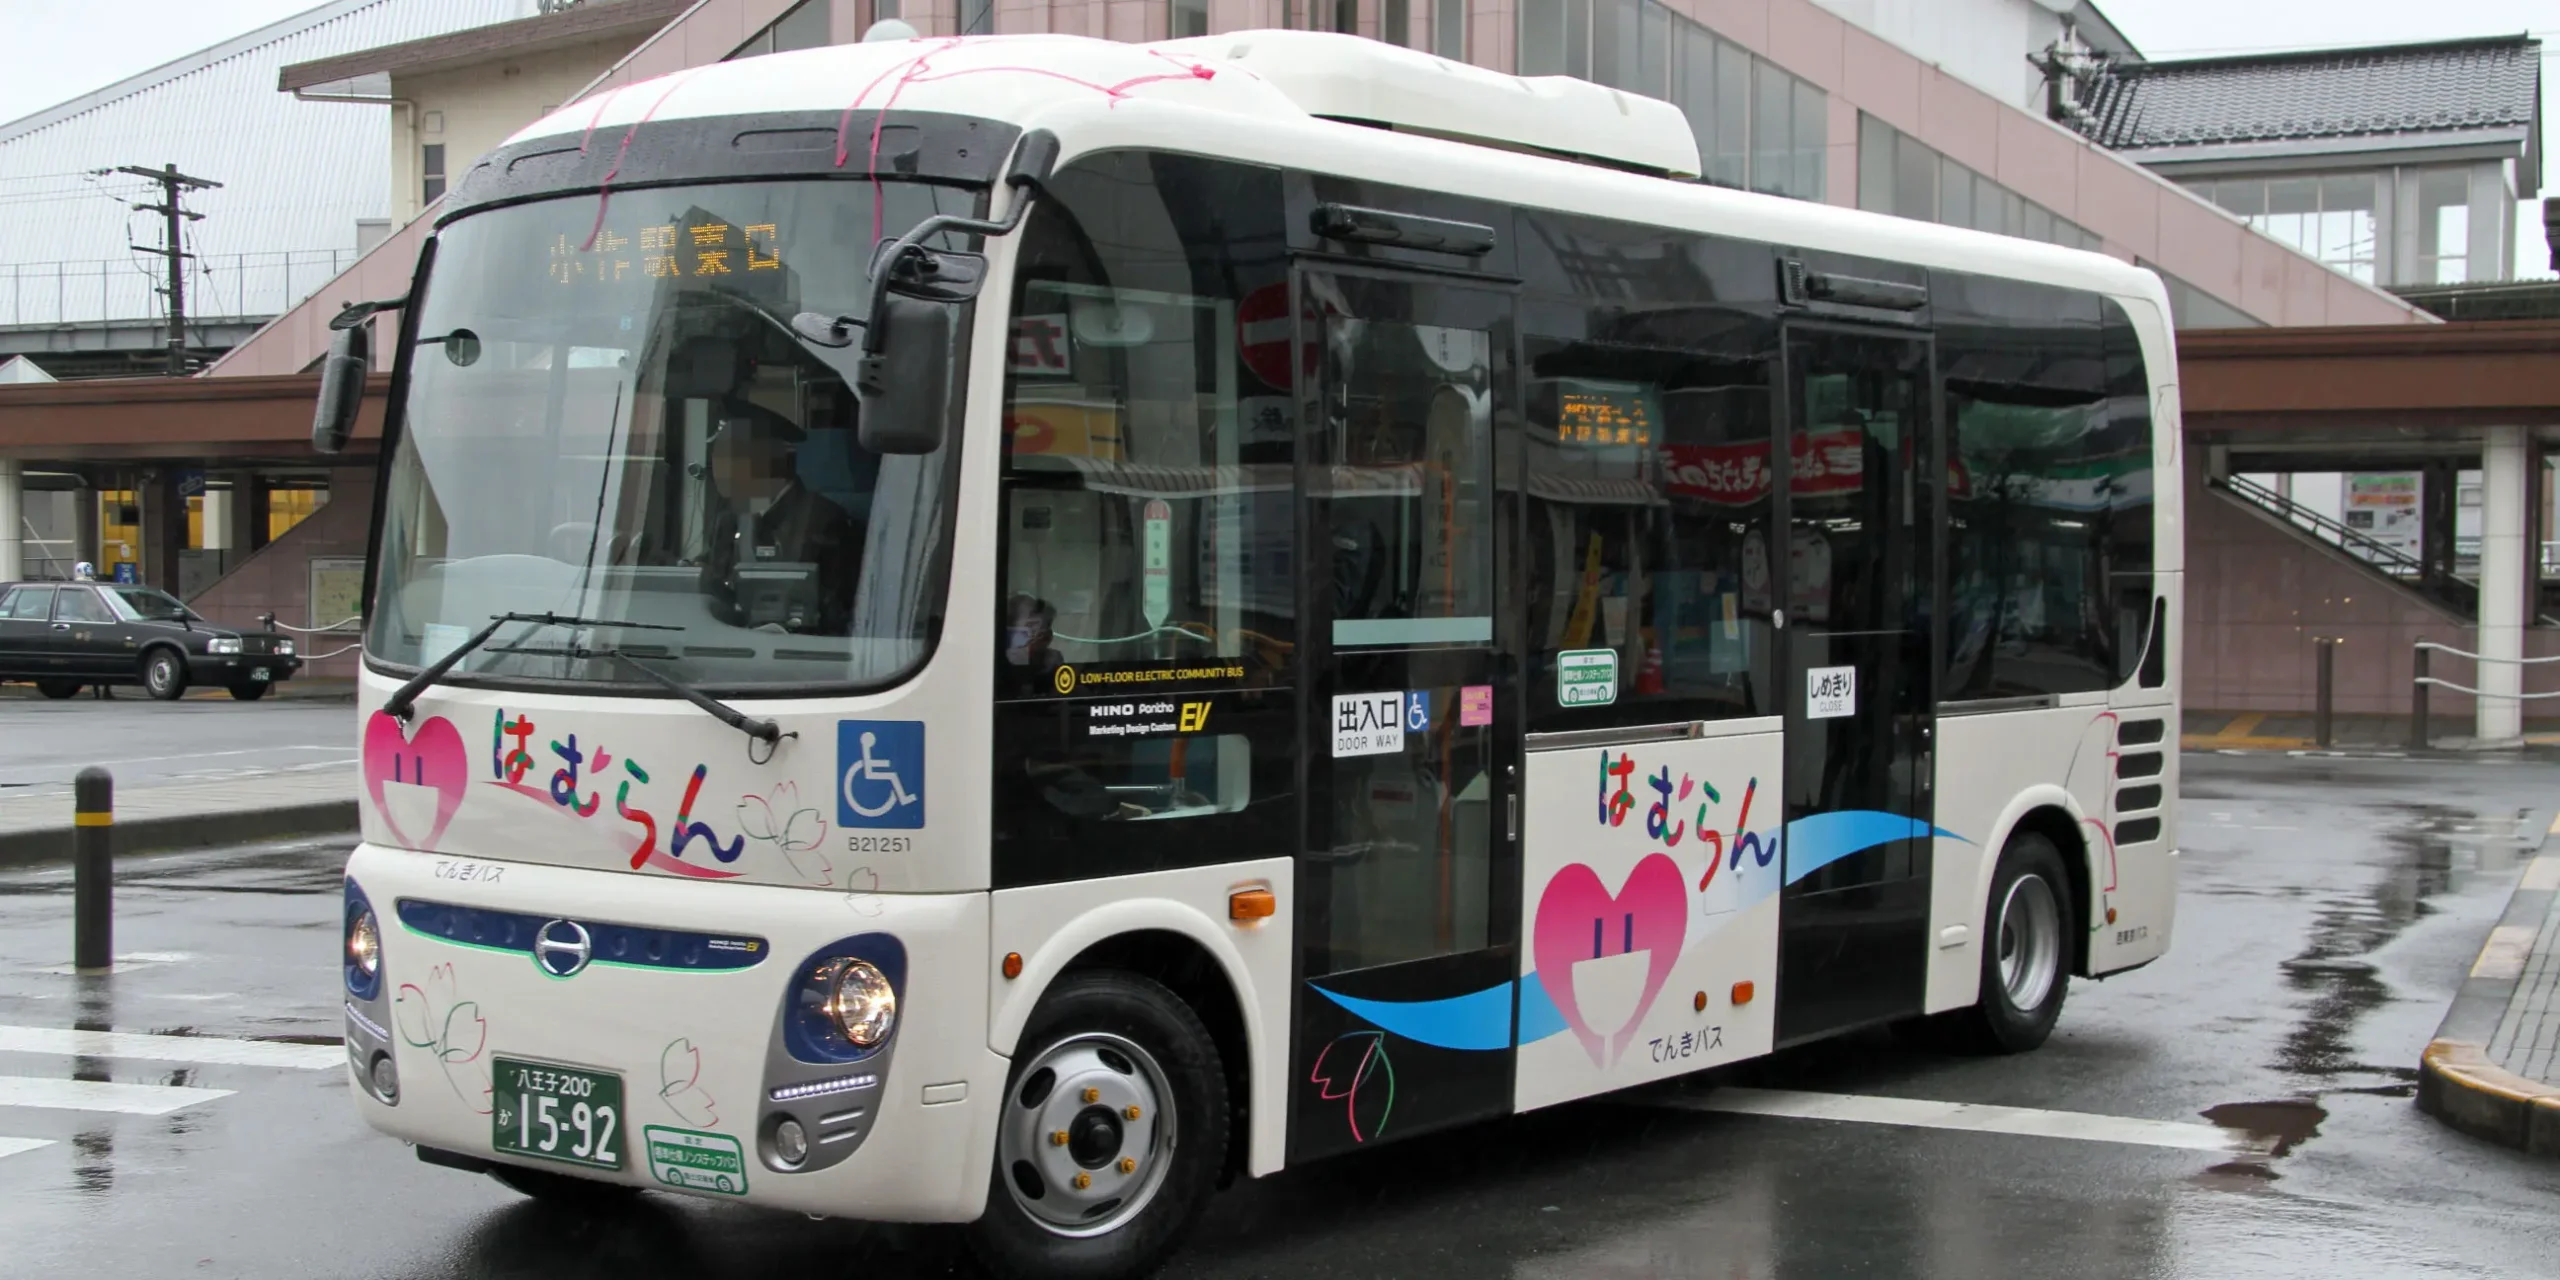 autobuses energías renovables - Qué tipo de energía usa el autobús